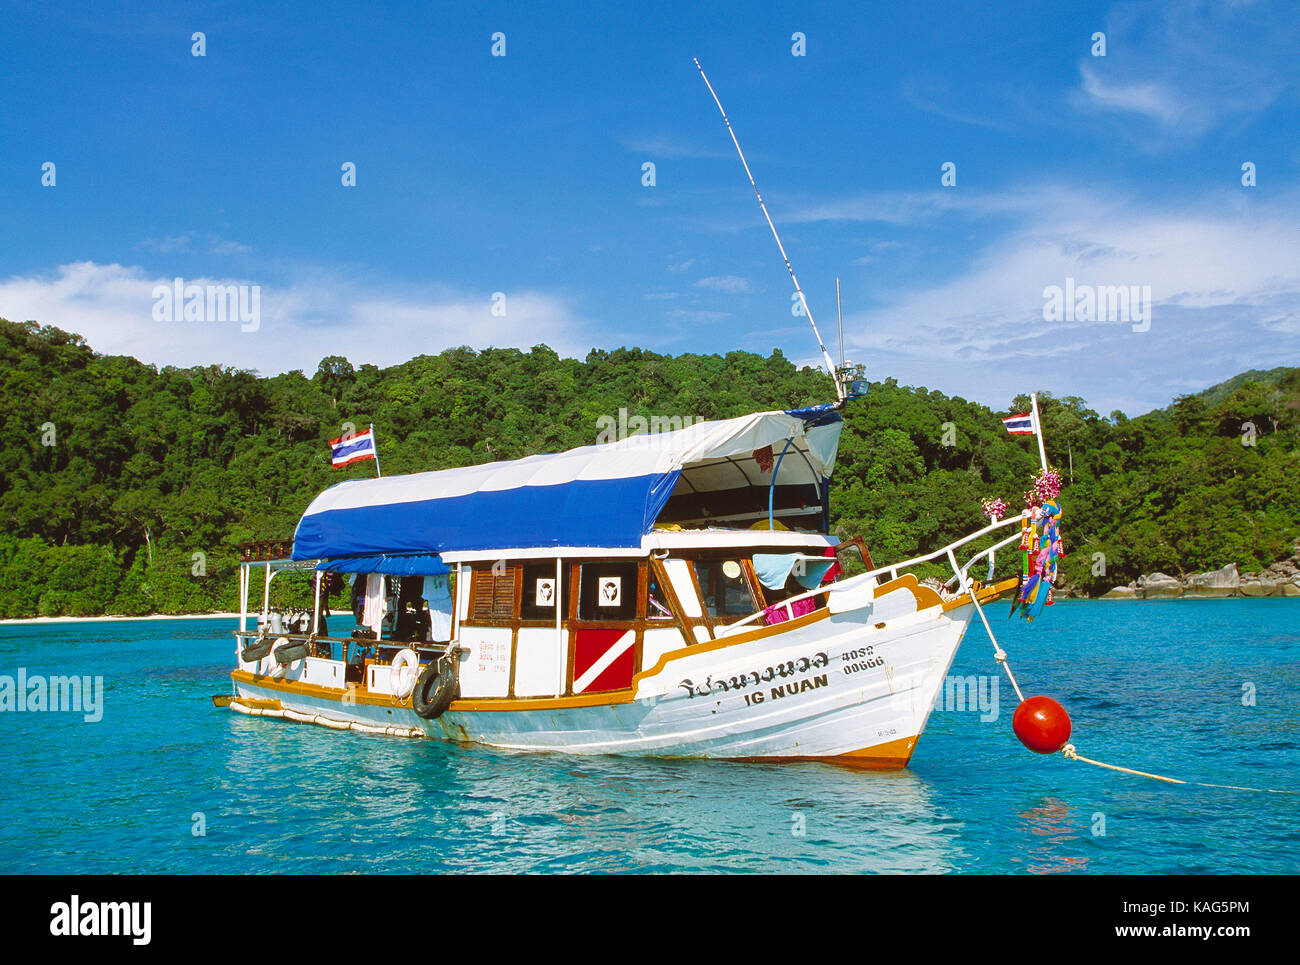 La Thaïlande. similan. les sports d'eau. plongée locale bateau amarré au large de la plage. Banque D'Images